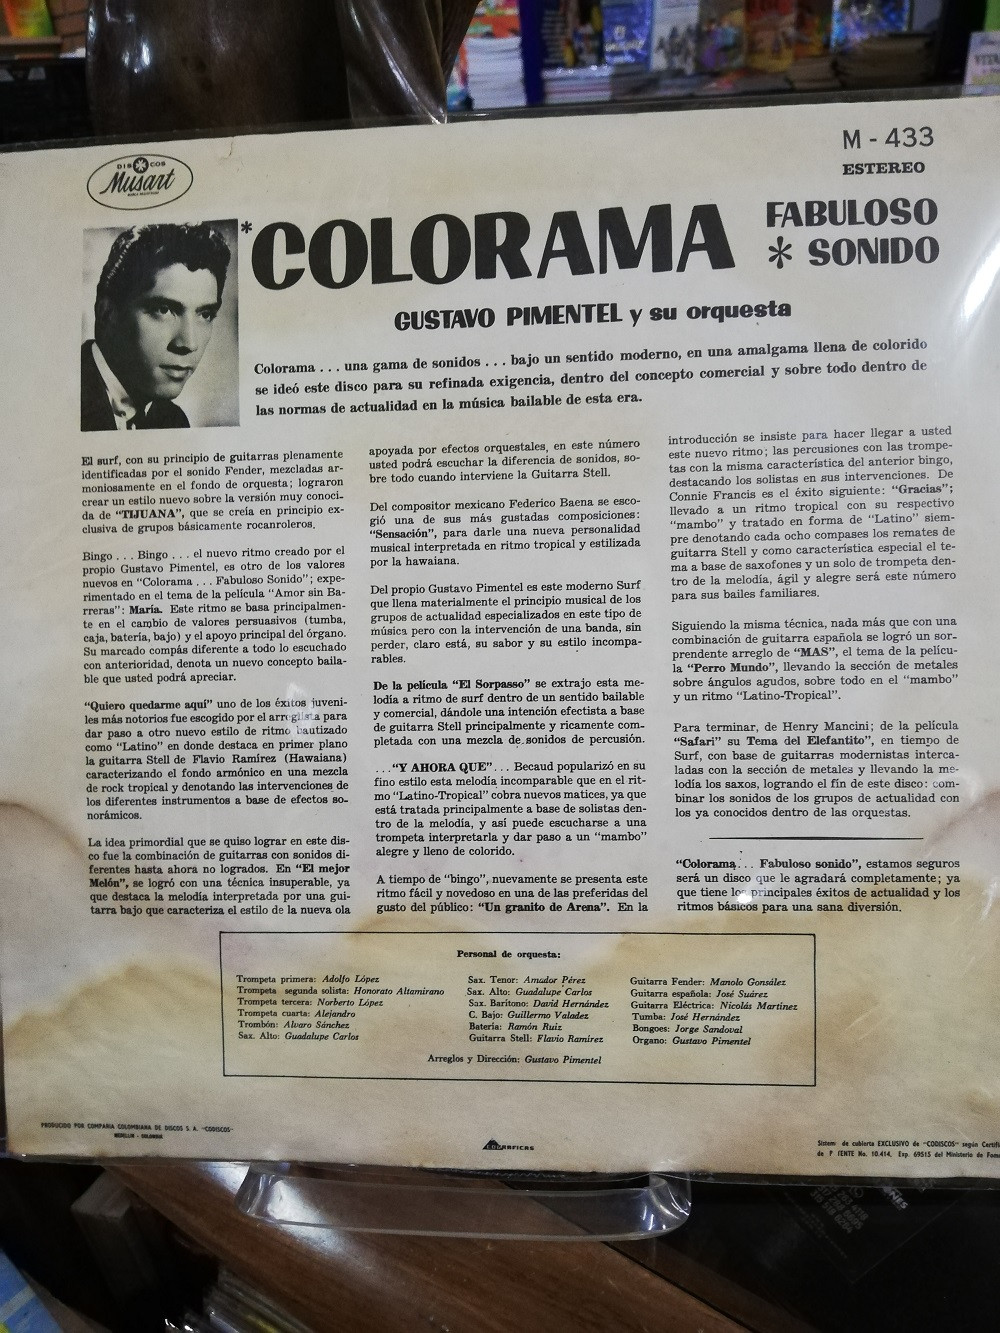 Imagen LP GUSTAVO PIMENTEL Y SU ORQUESTA - COLORAMA FABULOSO SONIDO 2